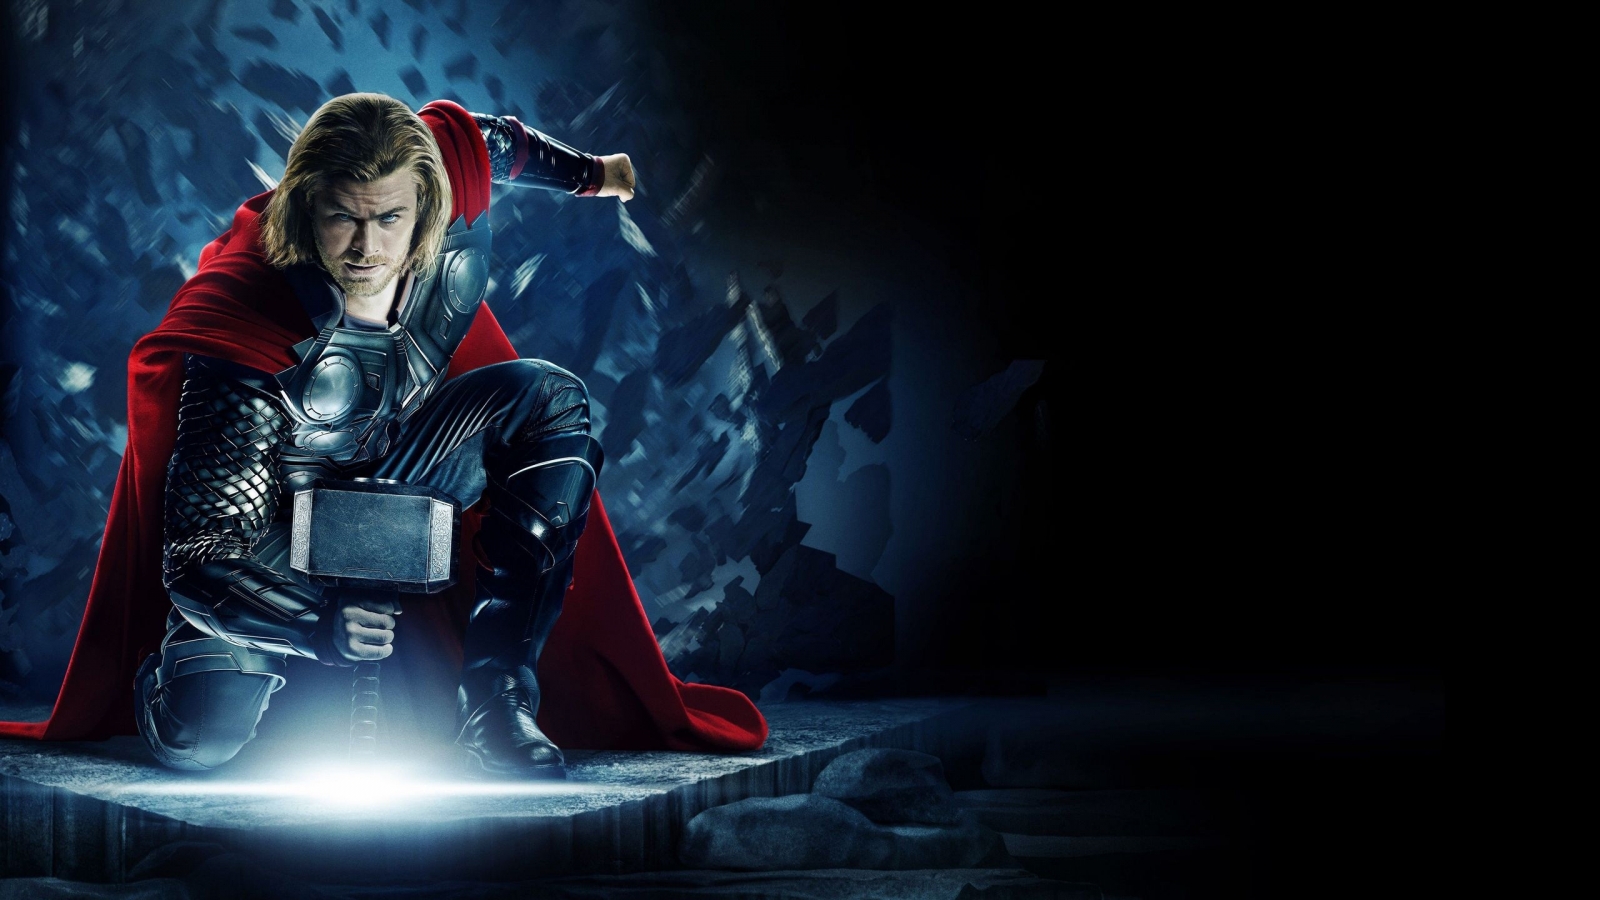 Thor Avengers for 1600 x 900 HDTV resolution